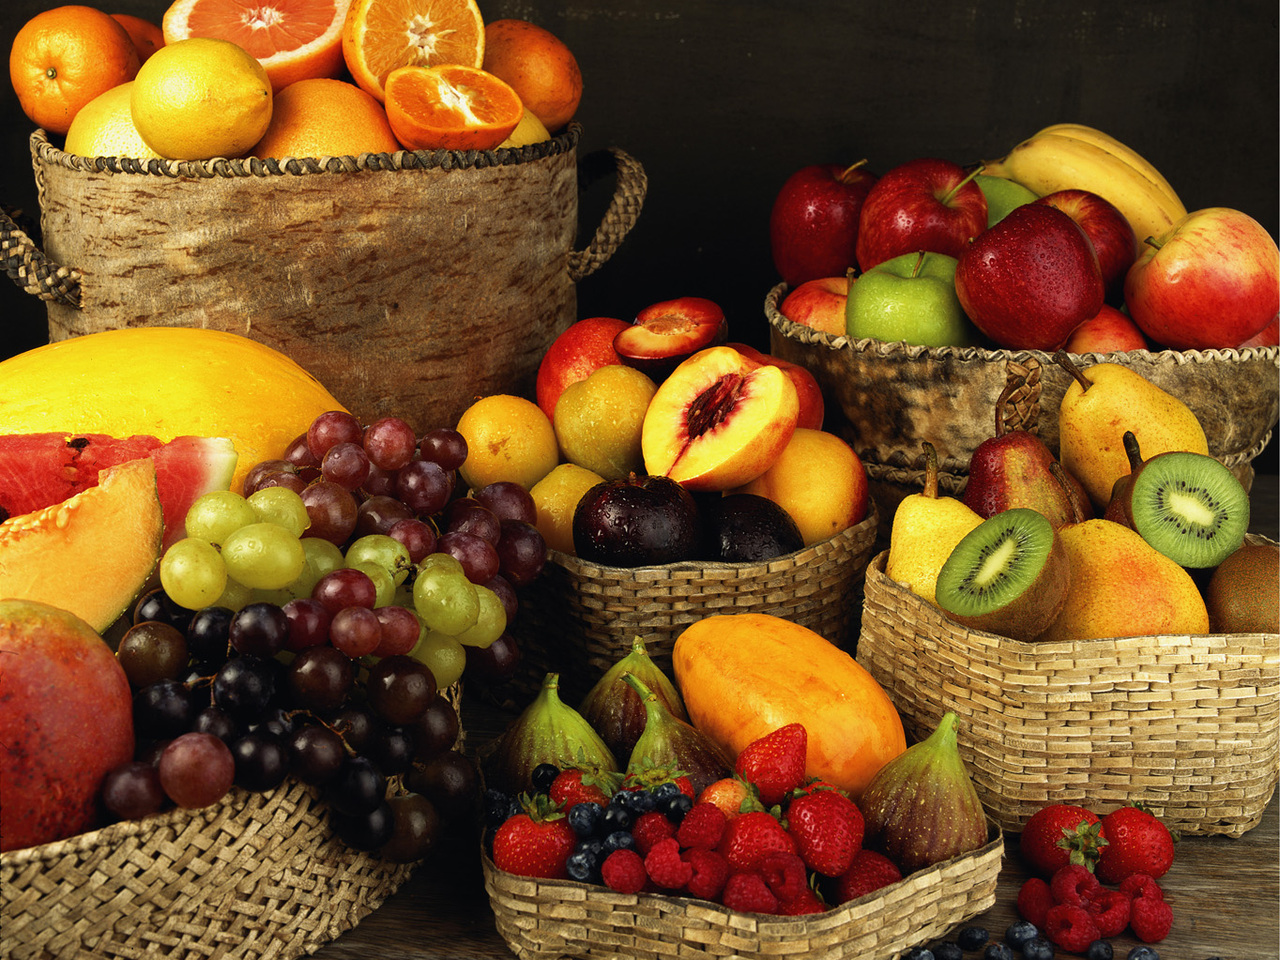 Все фрукты, имеющие желтую, оранжевую или красную окраску богаты бета-каротином, из которого в организме синтезируется витамин А, ответственный за состояние нашей кожи, слизистых оболочек и зрения